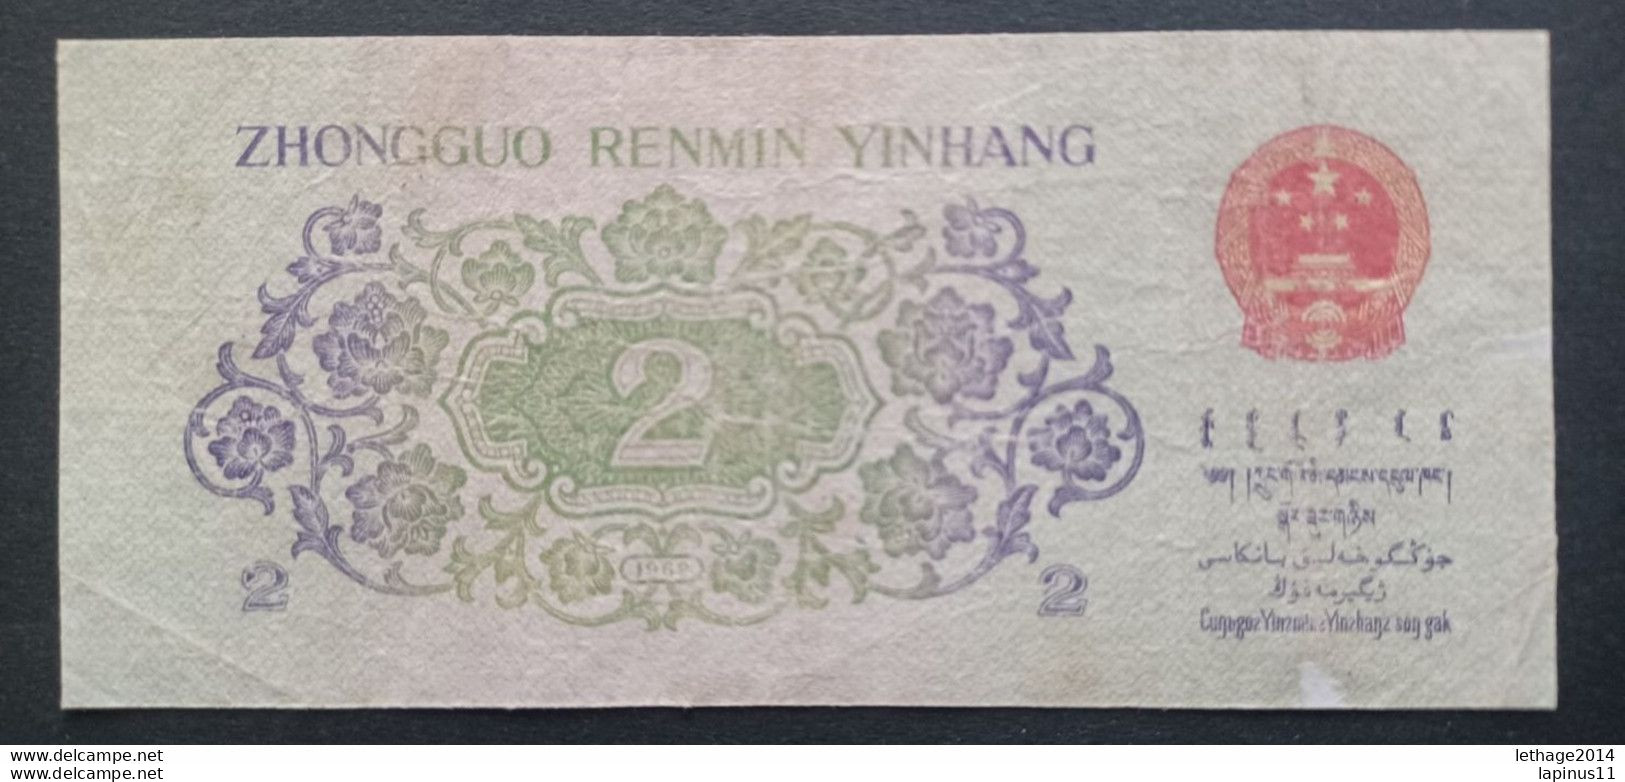 BANKNOTE CINA ZHONGGUO RENMI YINHANG 2 ER JIAO 1962 CIRCULATED - China